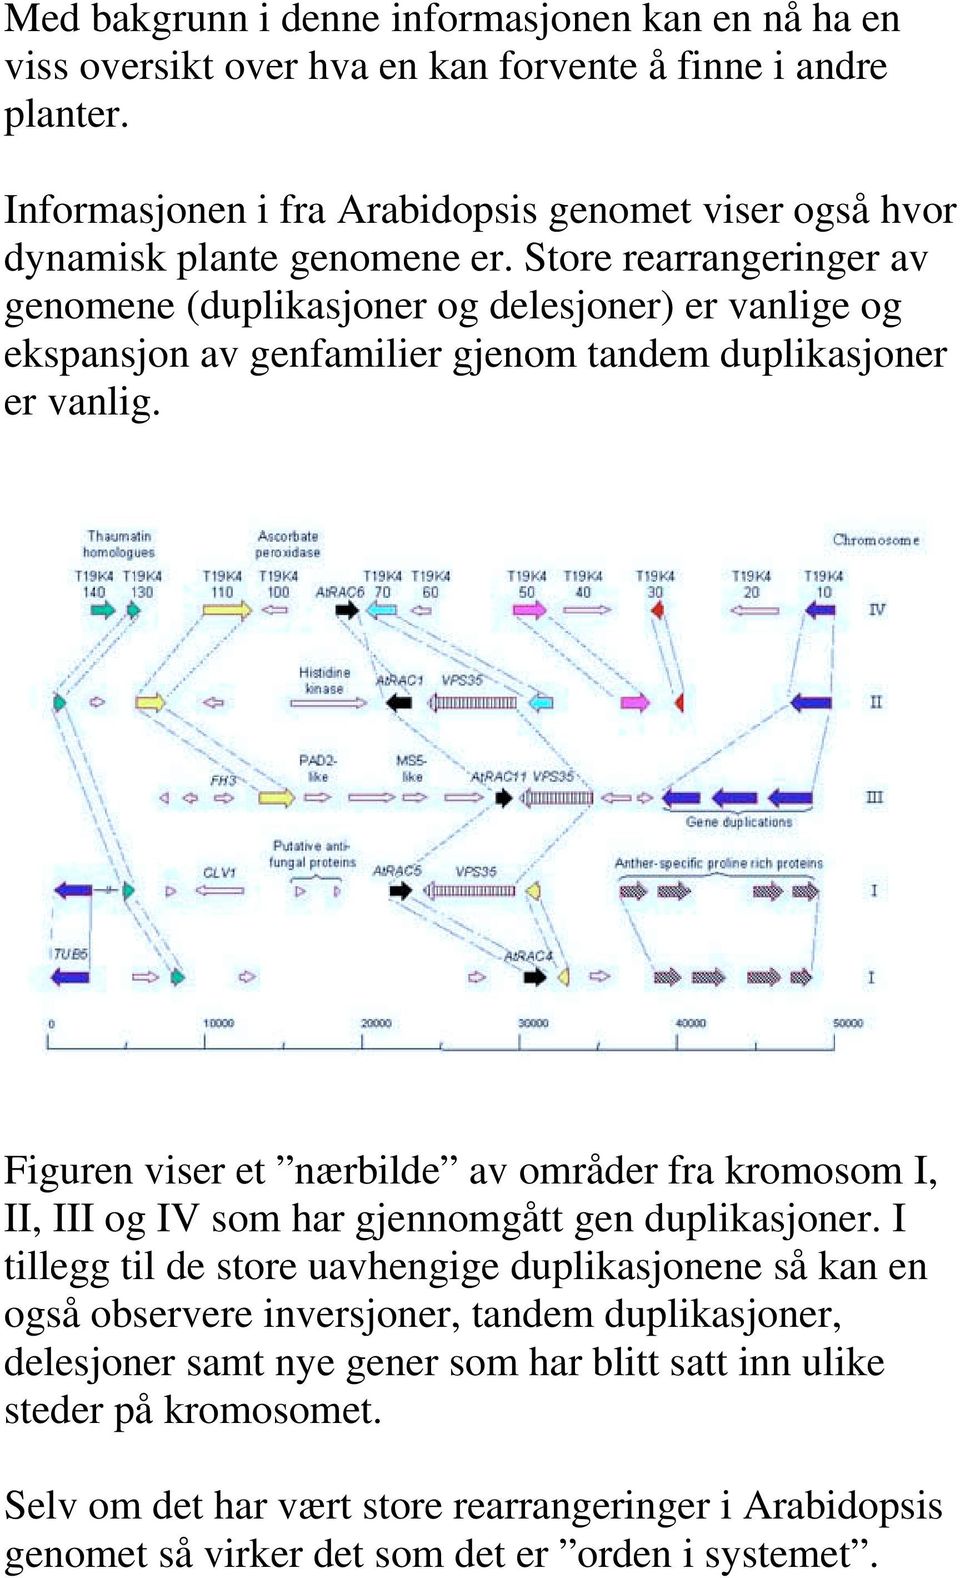 Store rearrangeringer av genomene (duplikasjoner og delesjoner) er vanlige og ekspansjon av genfamilier gjenom tandem duplikasjoner er vanlig.